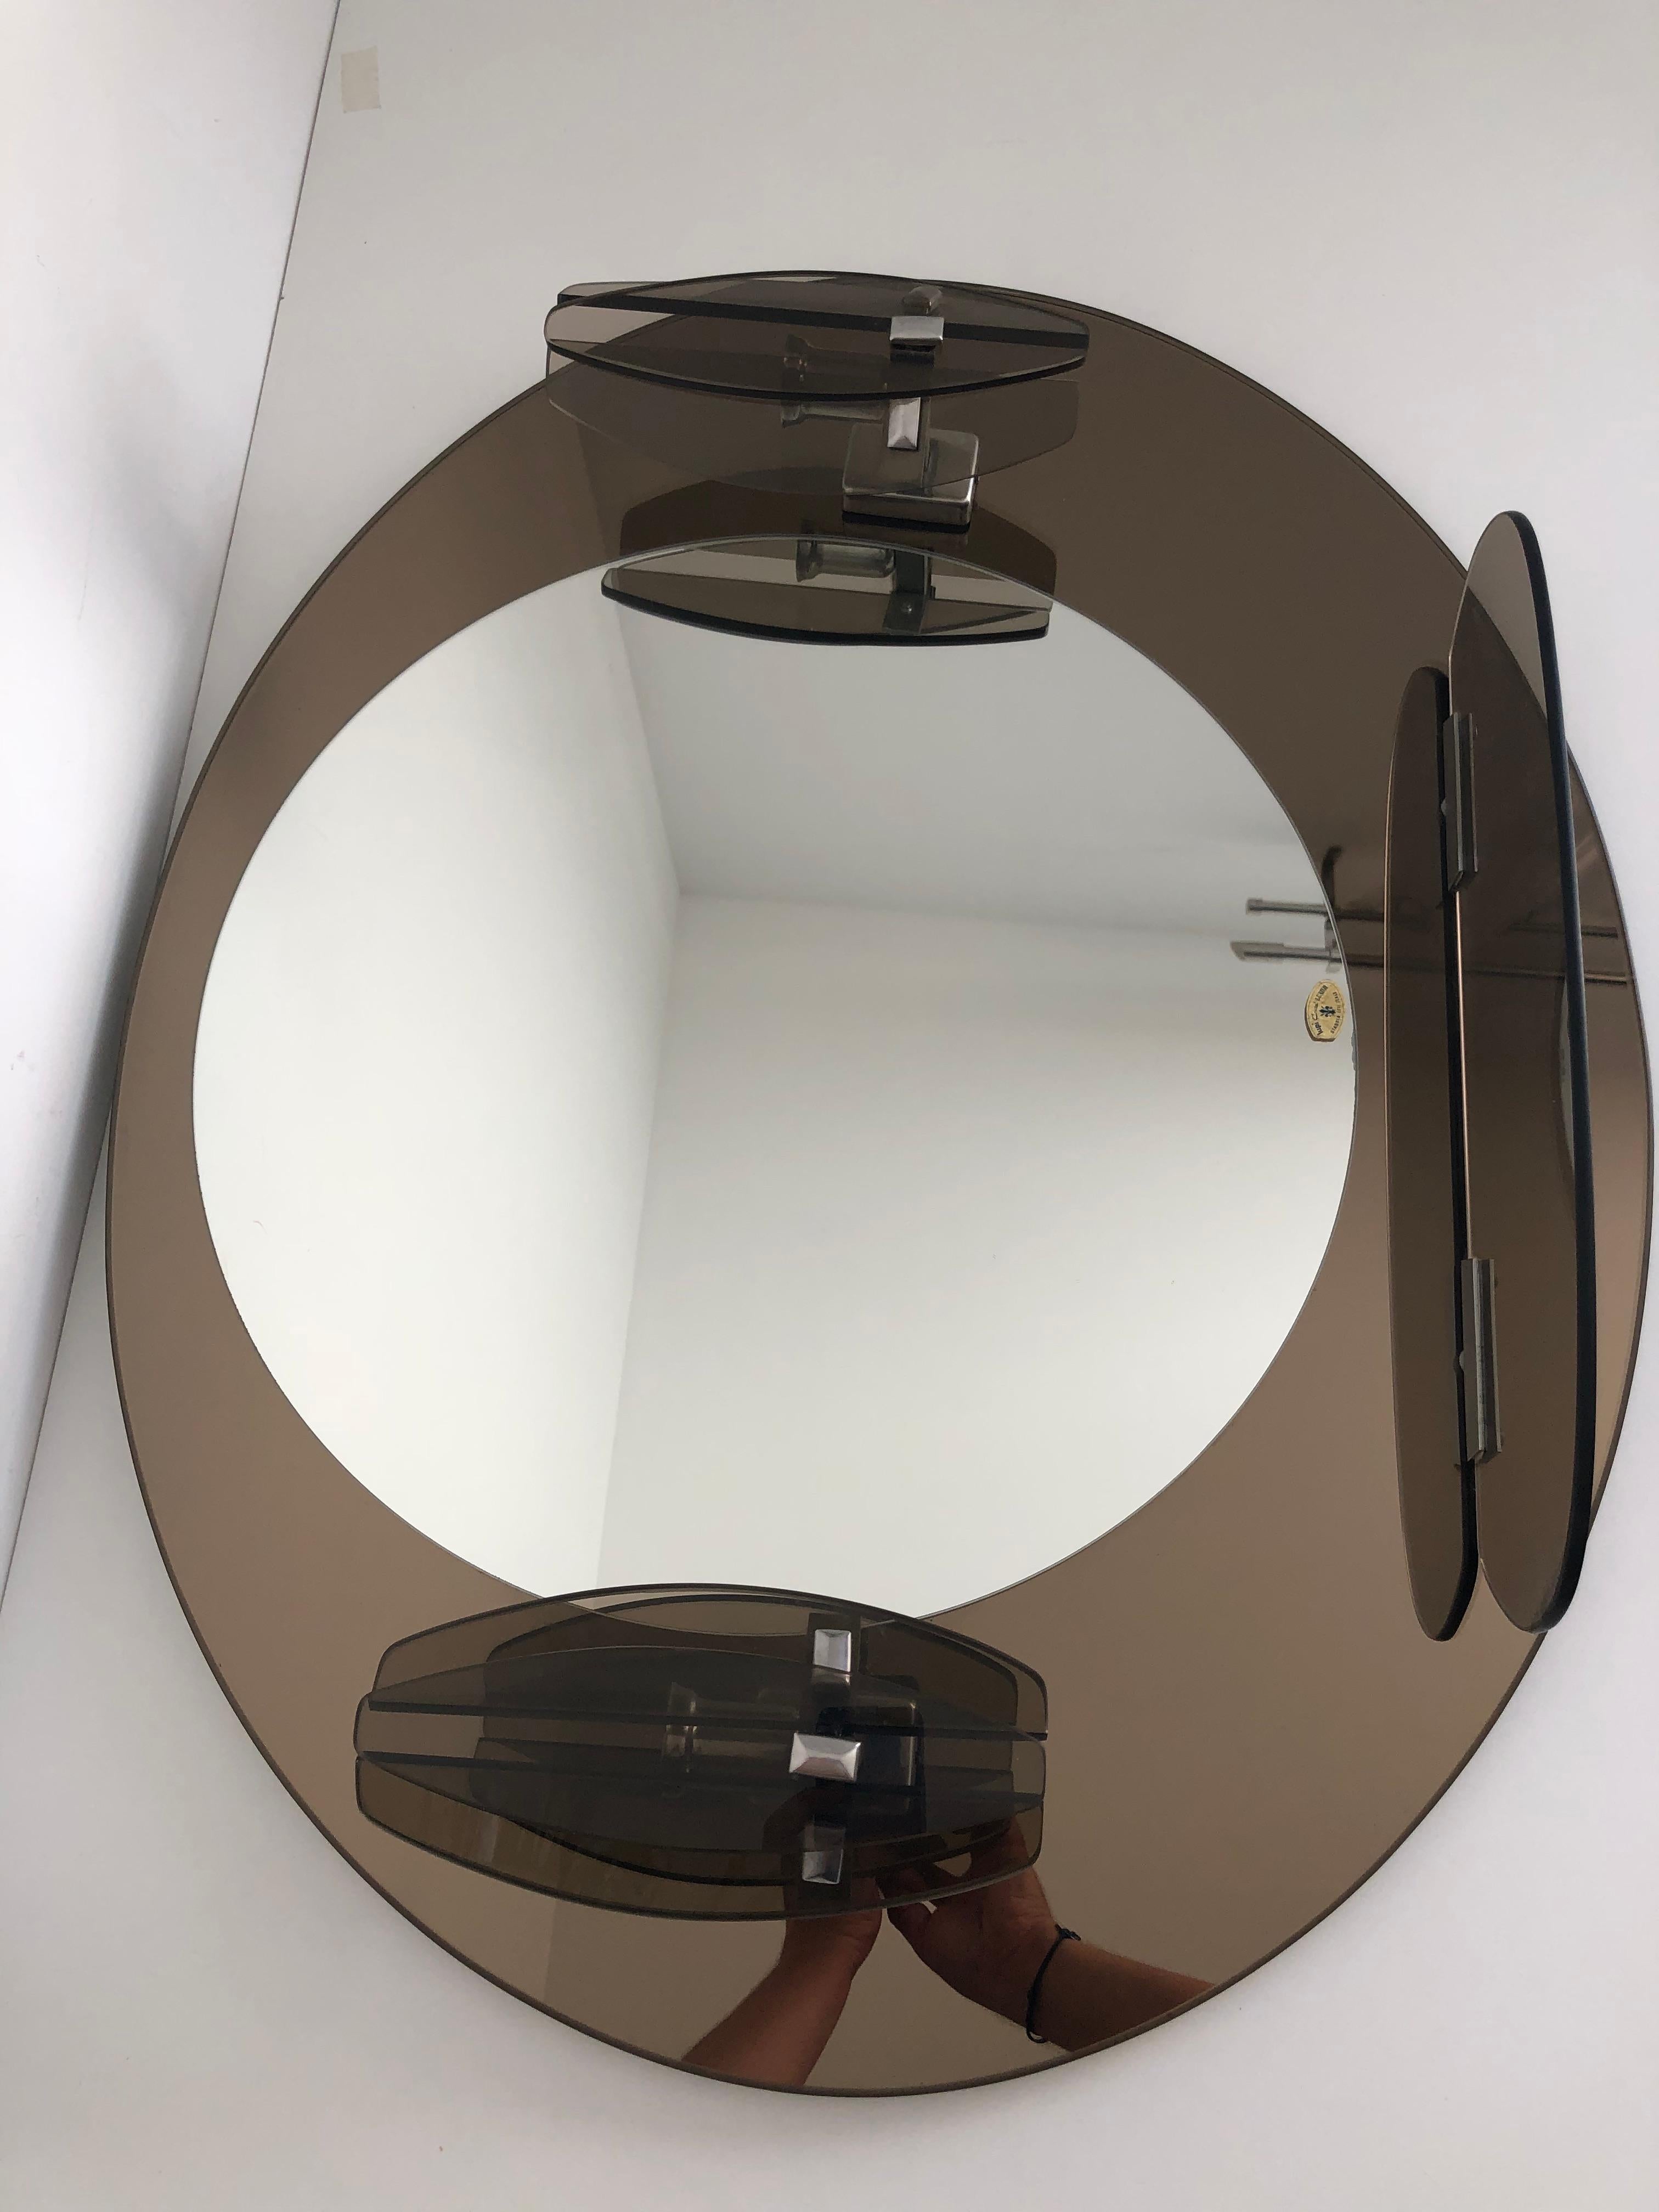 Miroir Lupi Cristal Luxor, avec 2 appliques intégrées et tablette, Made in Italy, fond couleur miroir marron, état proche du neuf, crochet de fixation murale au dos du miroir. 
Dimensions longueur 77 cm, hauteur 64 cm, profondeur 11